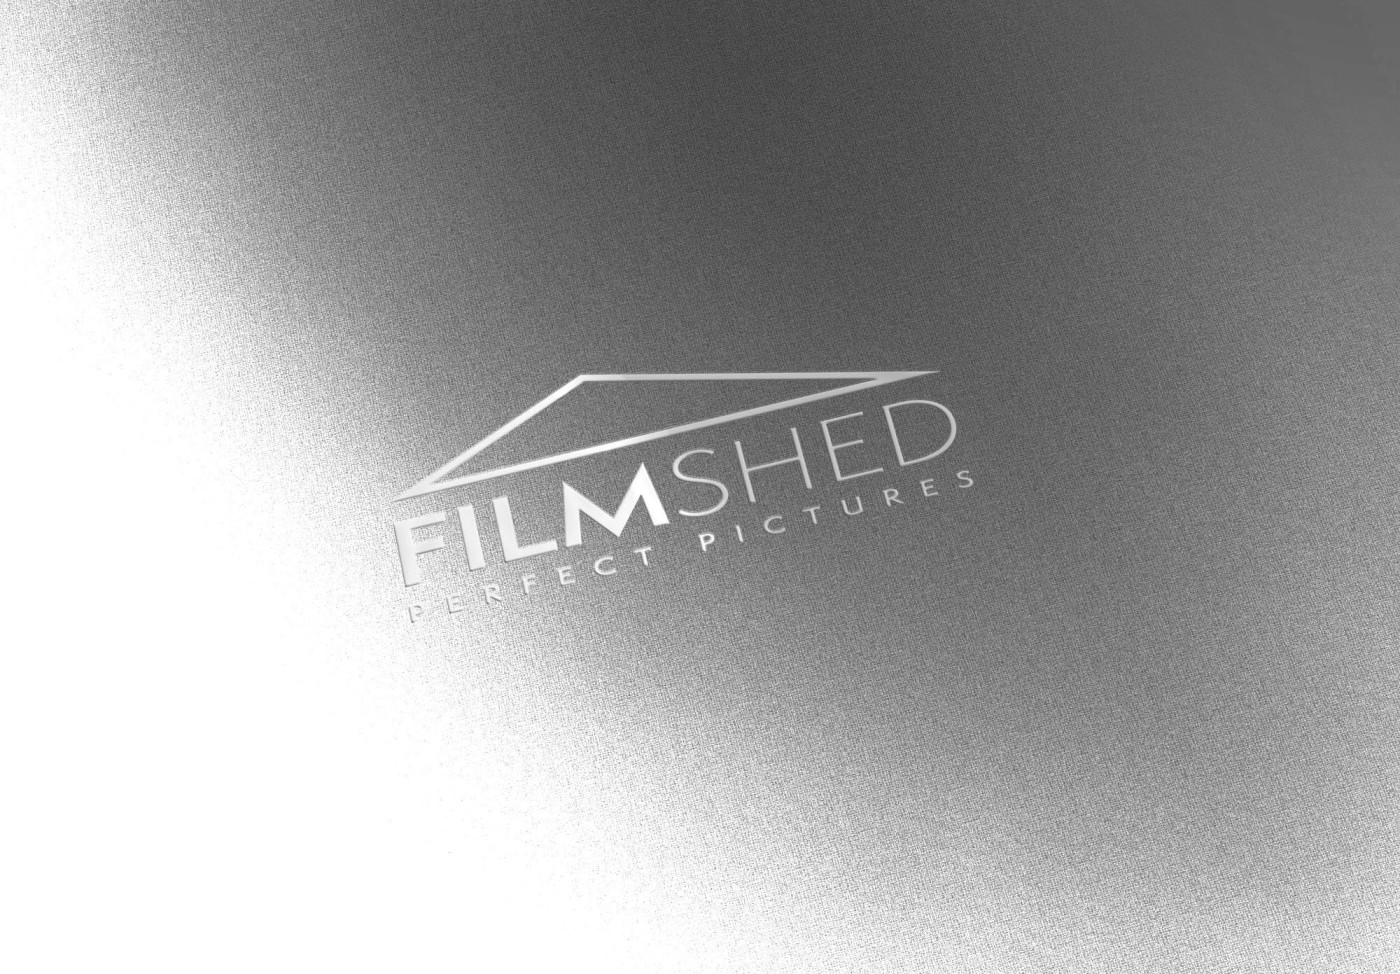 Filmshed logo